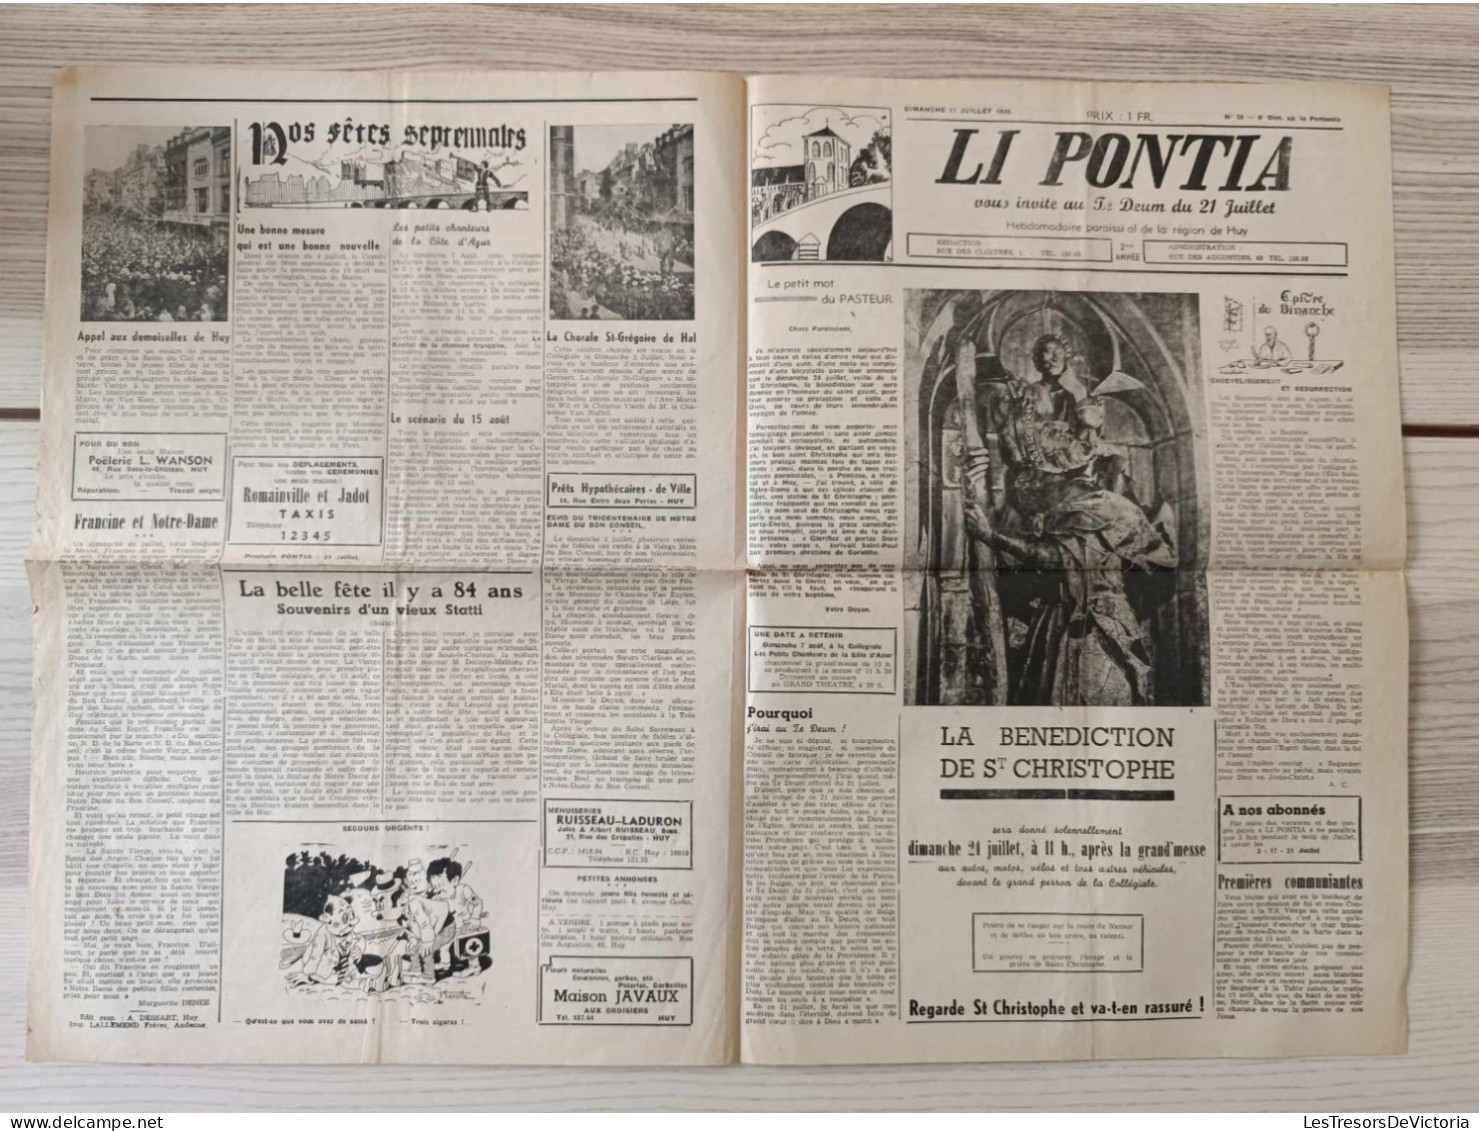 Belgique - Huy - Lot de 13 journaux - Li Pontia - Hebdomadaire paroissial de la région de huy